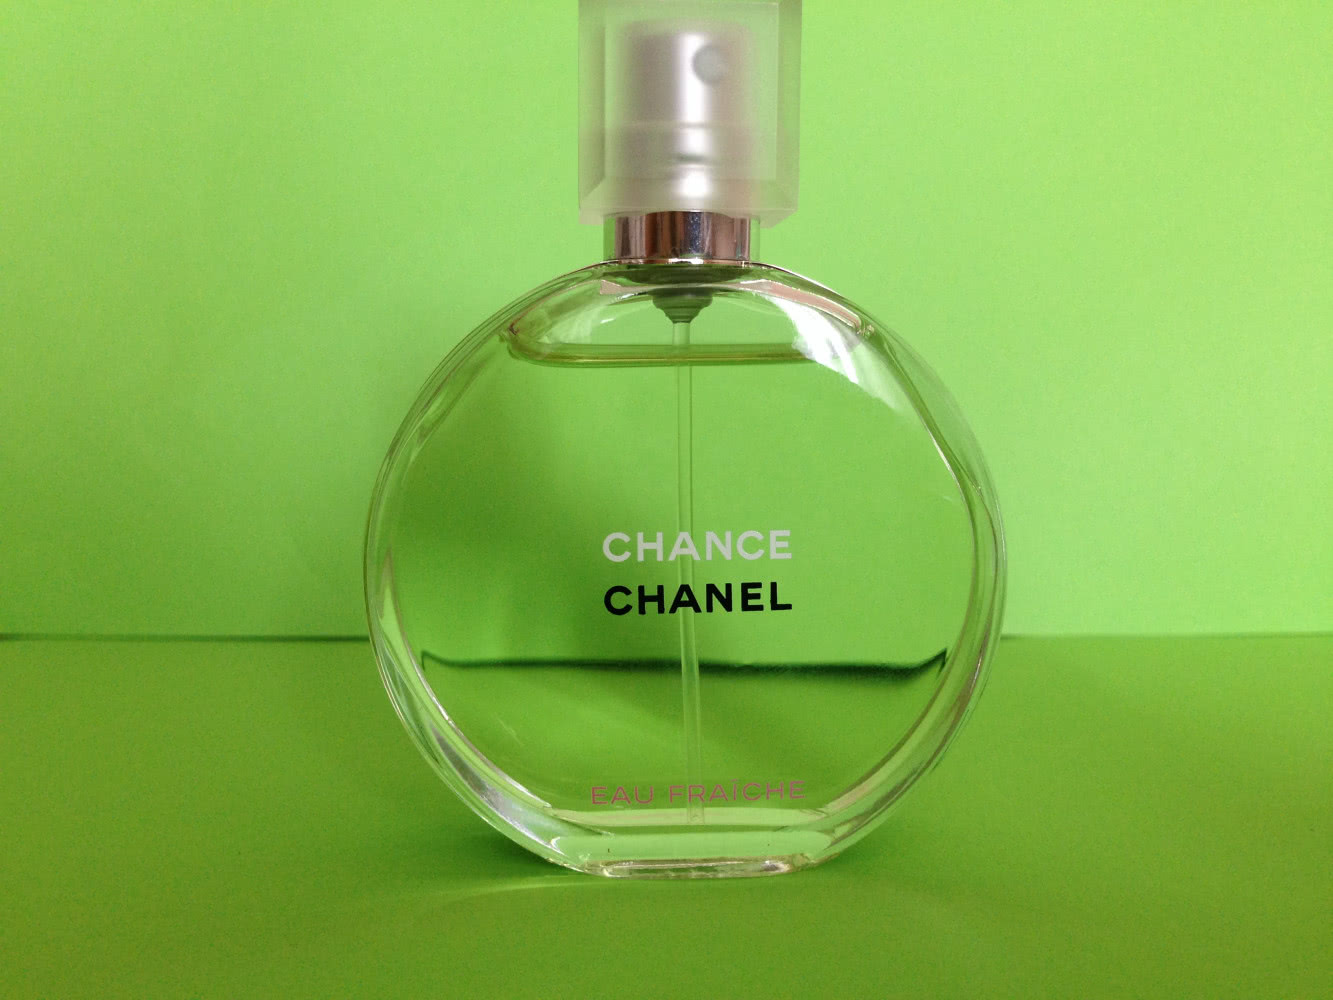 Chanel Chance eau Fraiche 35ml